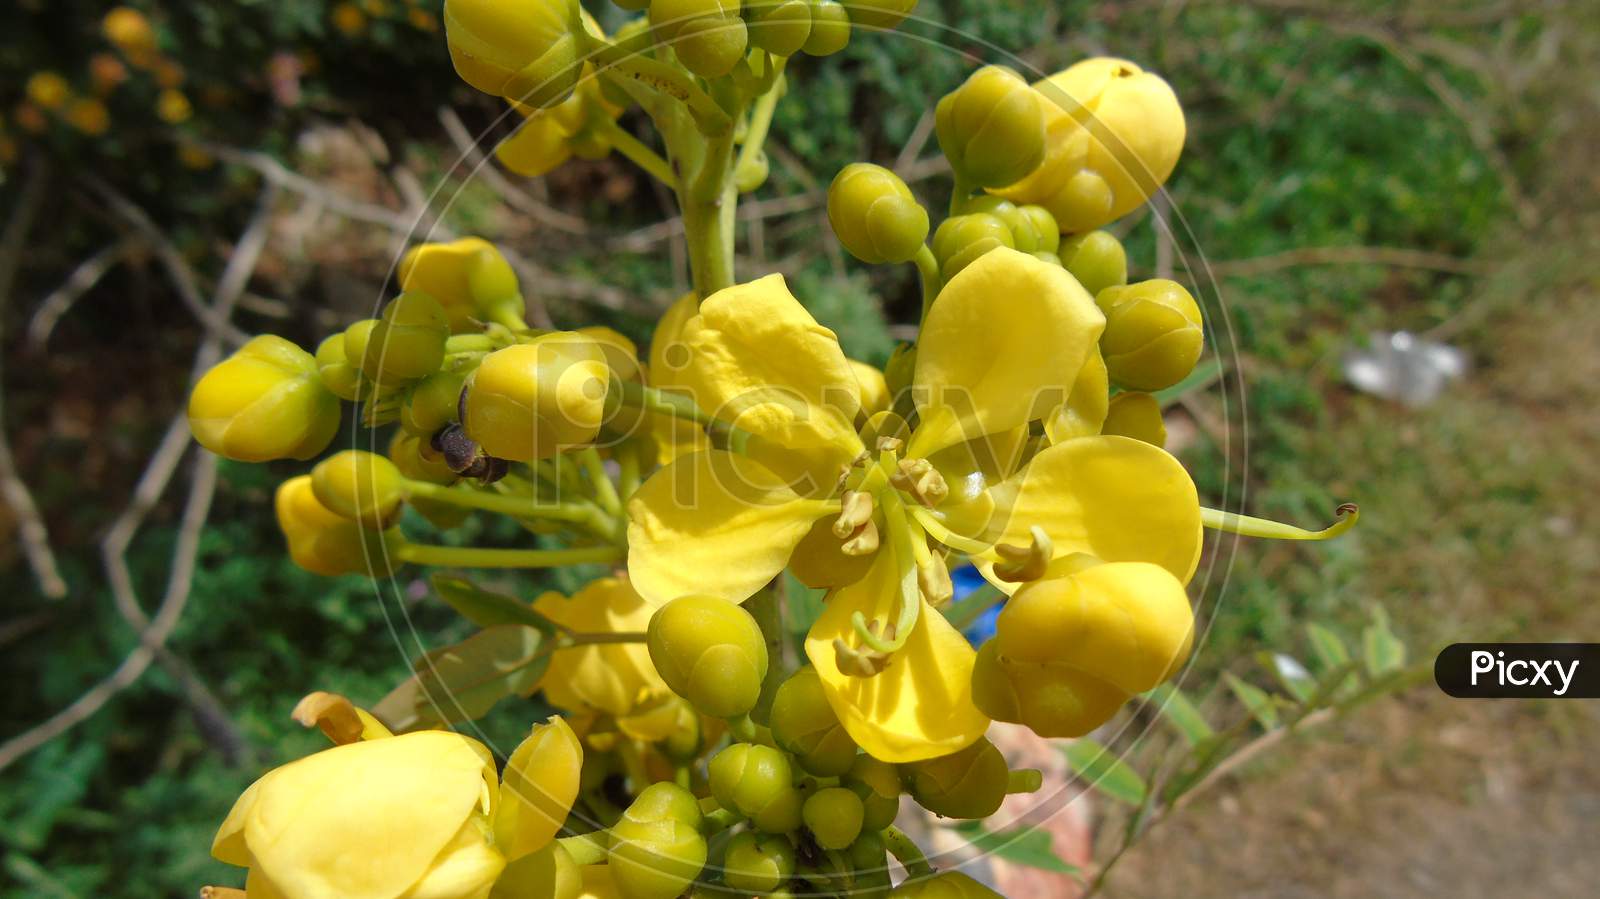 cute yellow flowers in garden